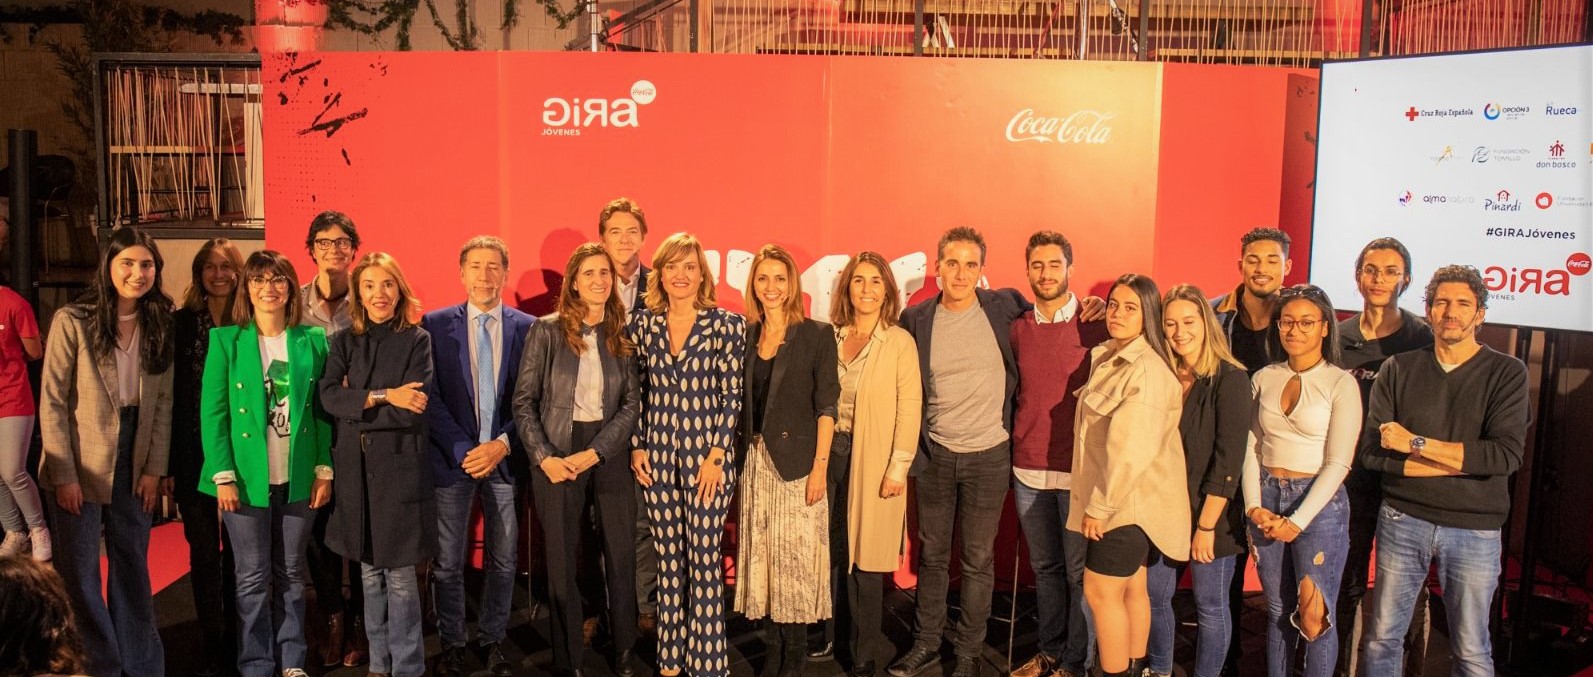 Youth Business Spain, un agente del cambio en la X Edición de Gira Jóvenes de Coca Cola